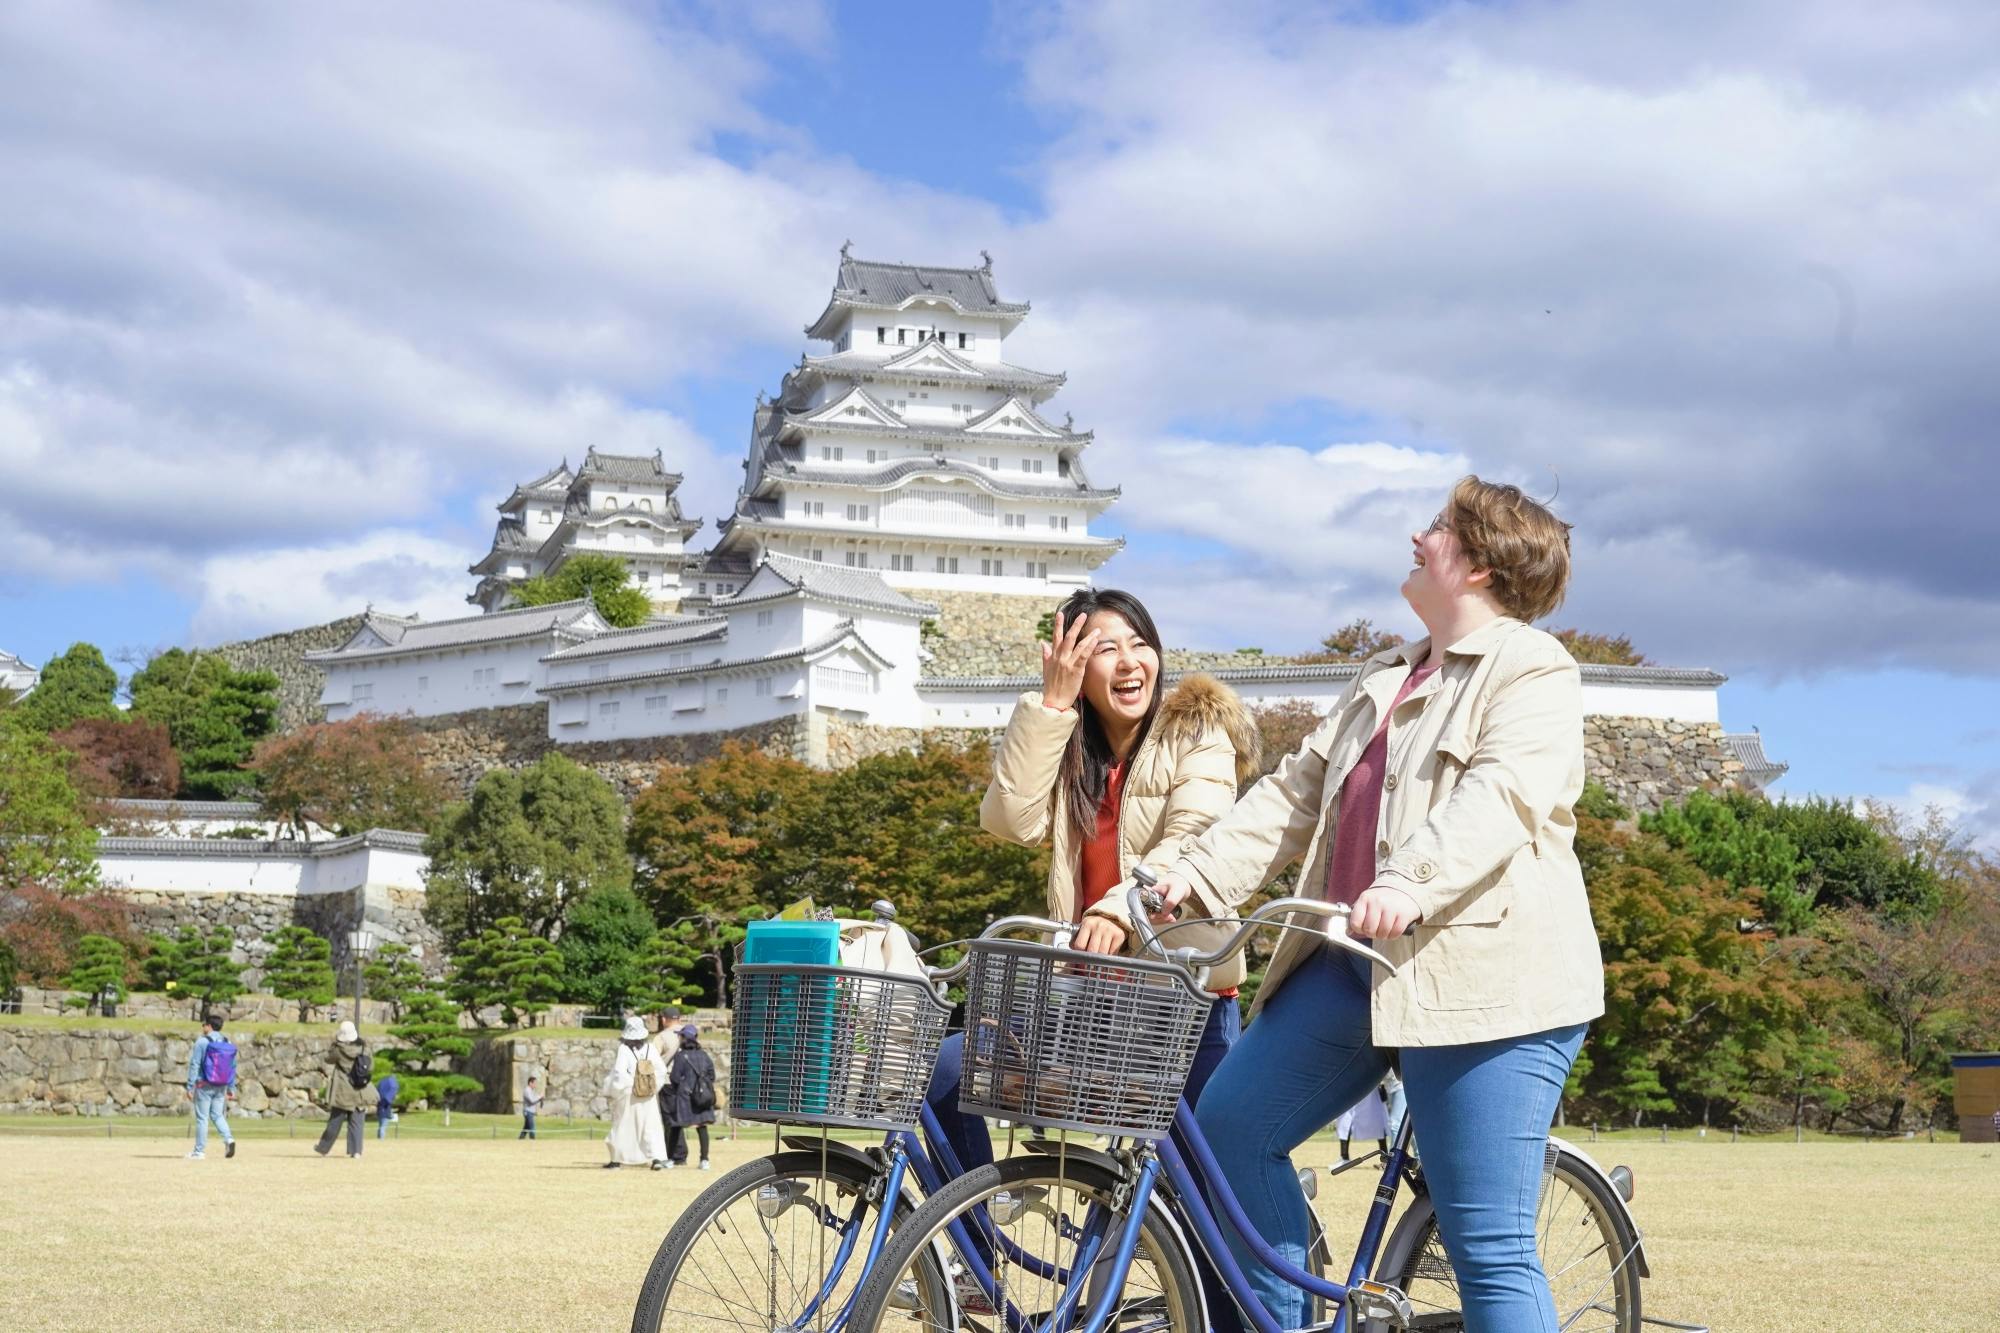 Visita guiada en bicicleta por la ciudad del castillo de Himeji con almuerzo